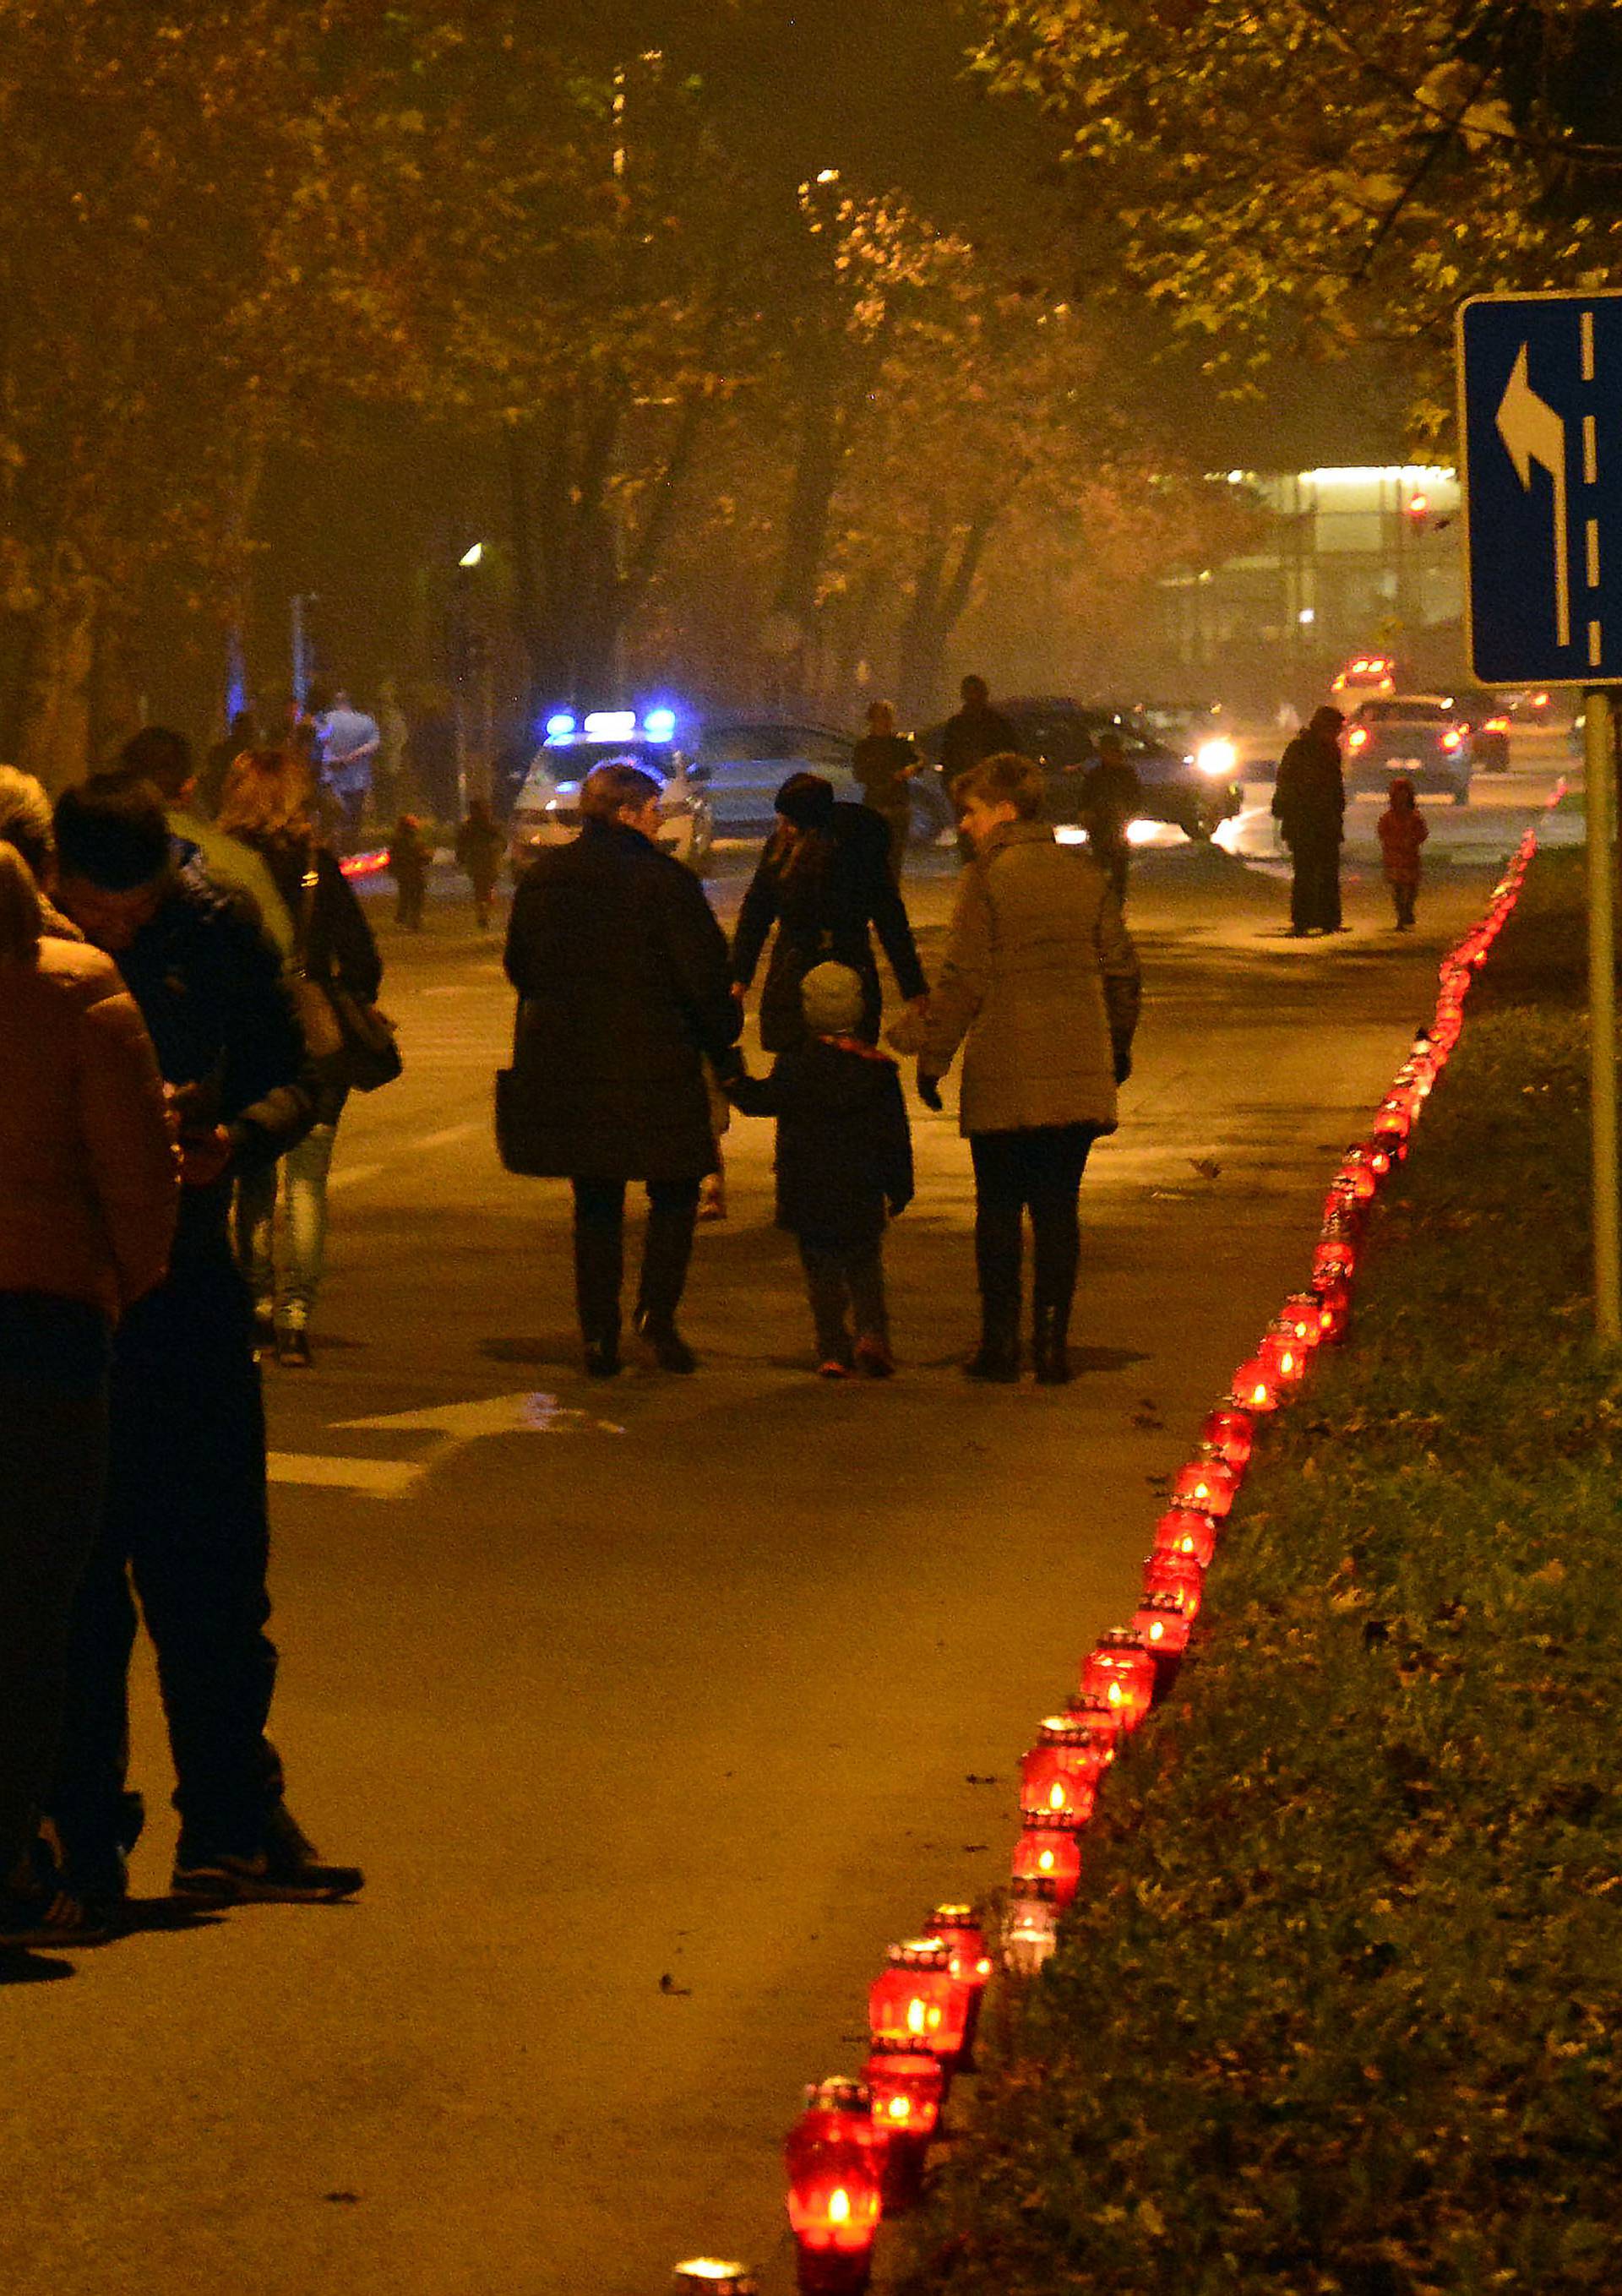 Odaju počast: Diljem Hrvatske građani pale svijeće za Vukovar